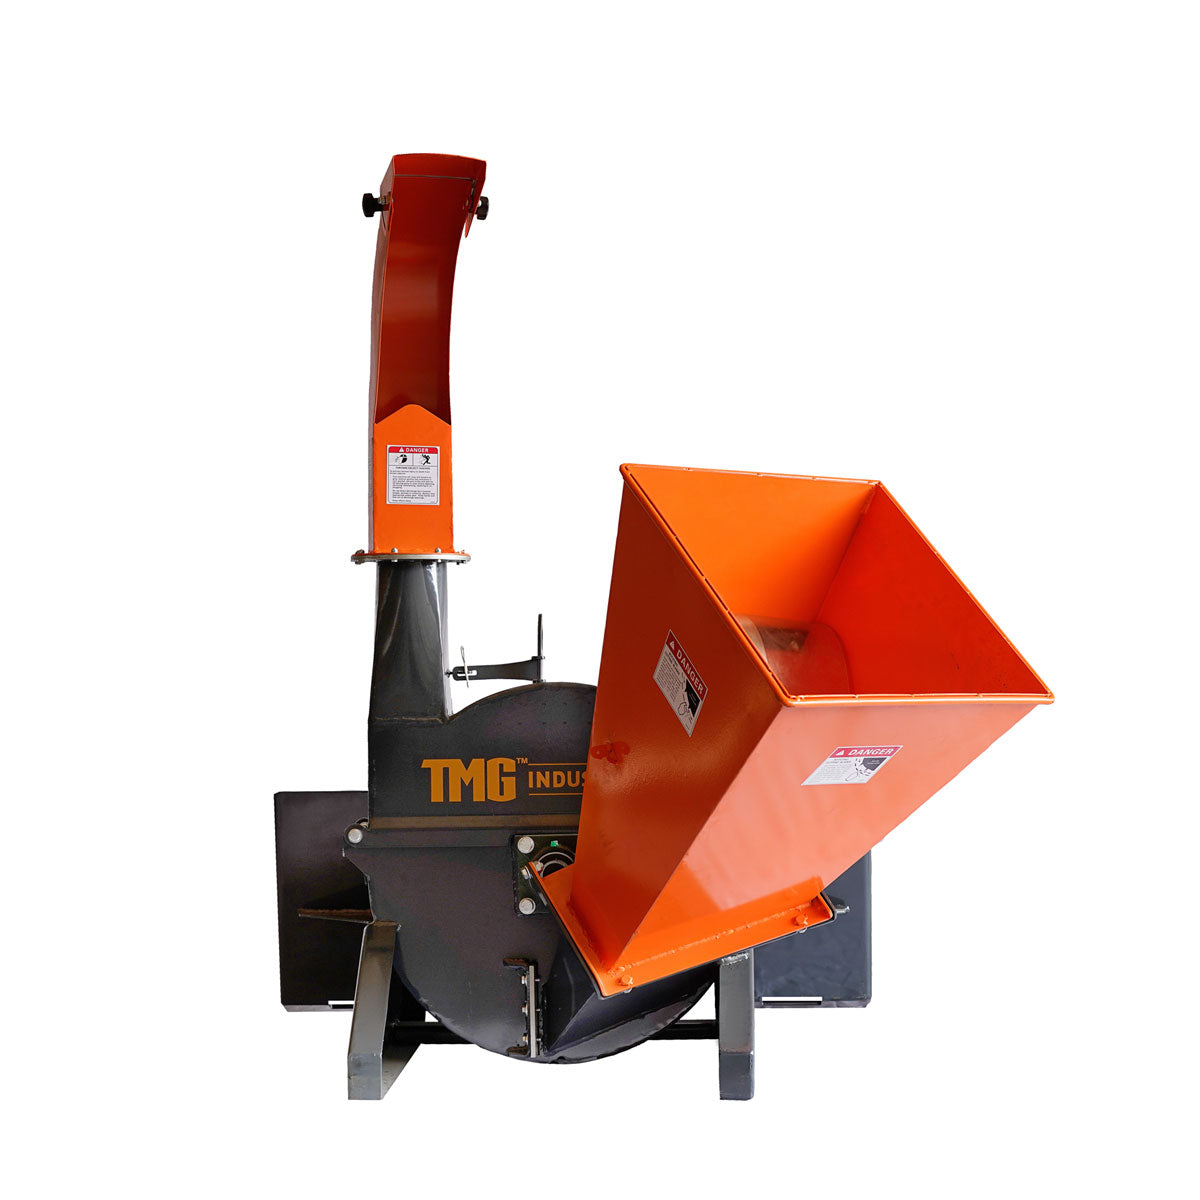 TMG Industrial 4” Skid Steer Wood Chipper, Gravity-Fed, Universal Skid Steer Mount, TMG-WC42S